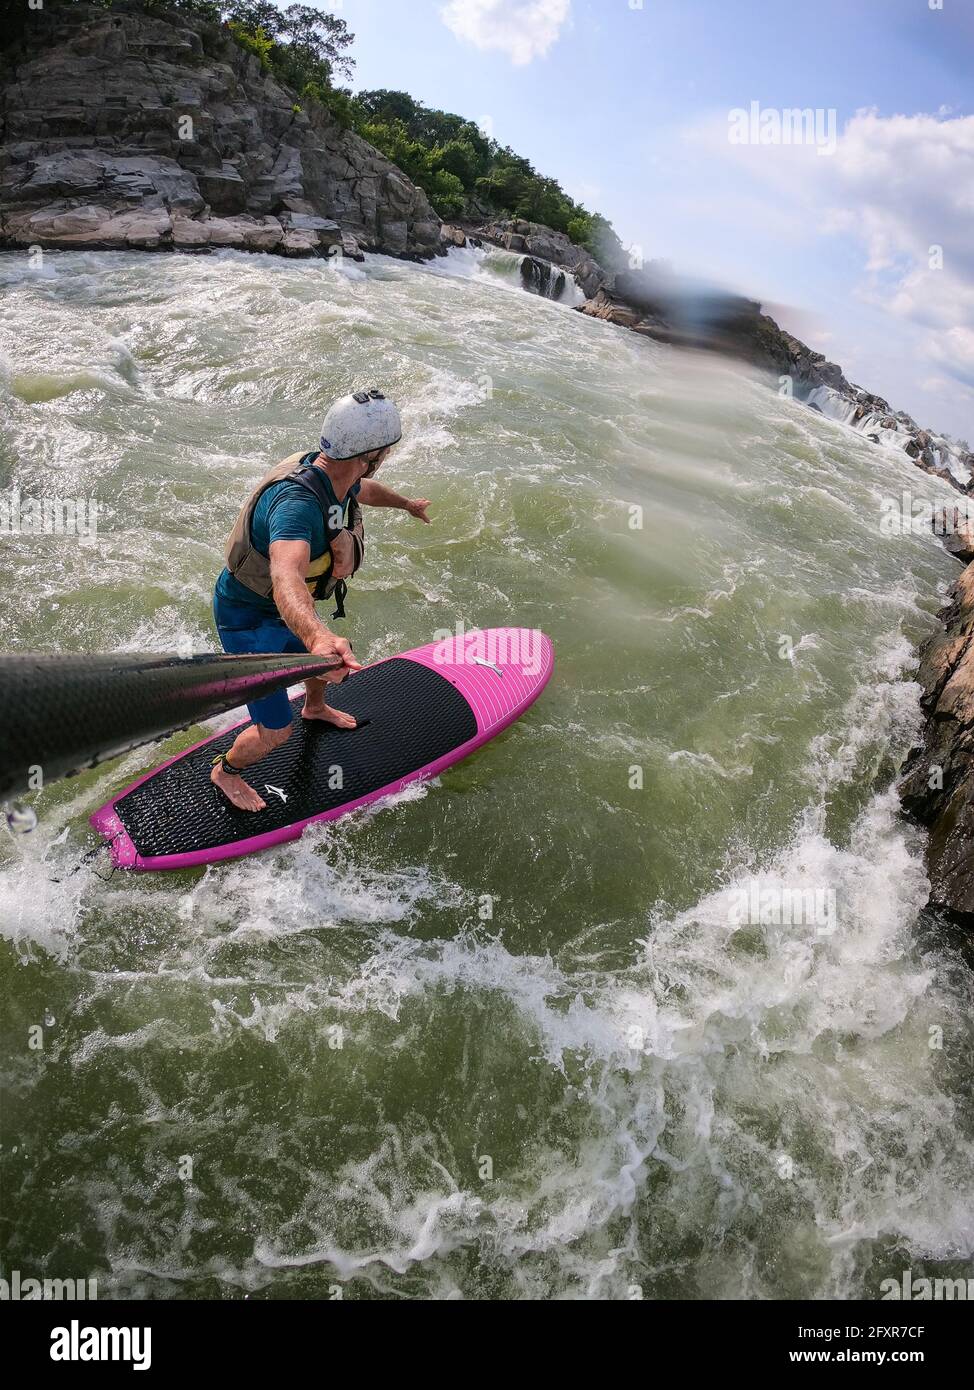 Fotógrafo Skip Brown stand up paddle surfes desafiantes aguas blancas debajo de las Great Falls del río Potomac, frontera de Maryland y Virginia, Estados Unidos Foto de stock